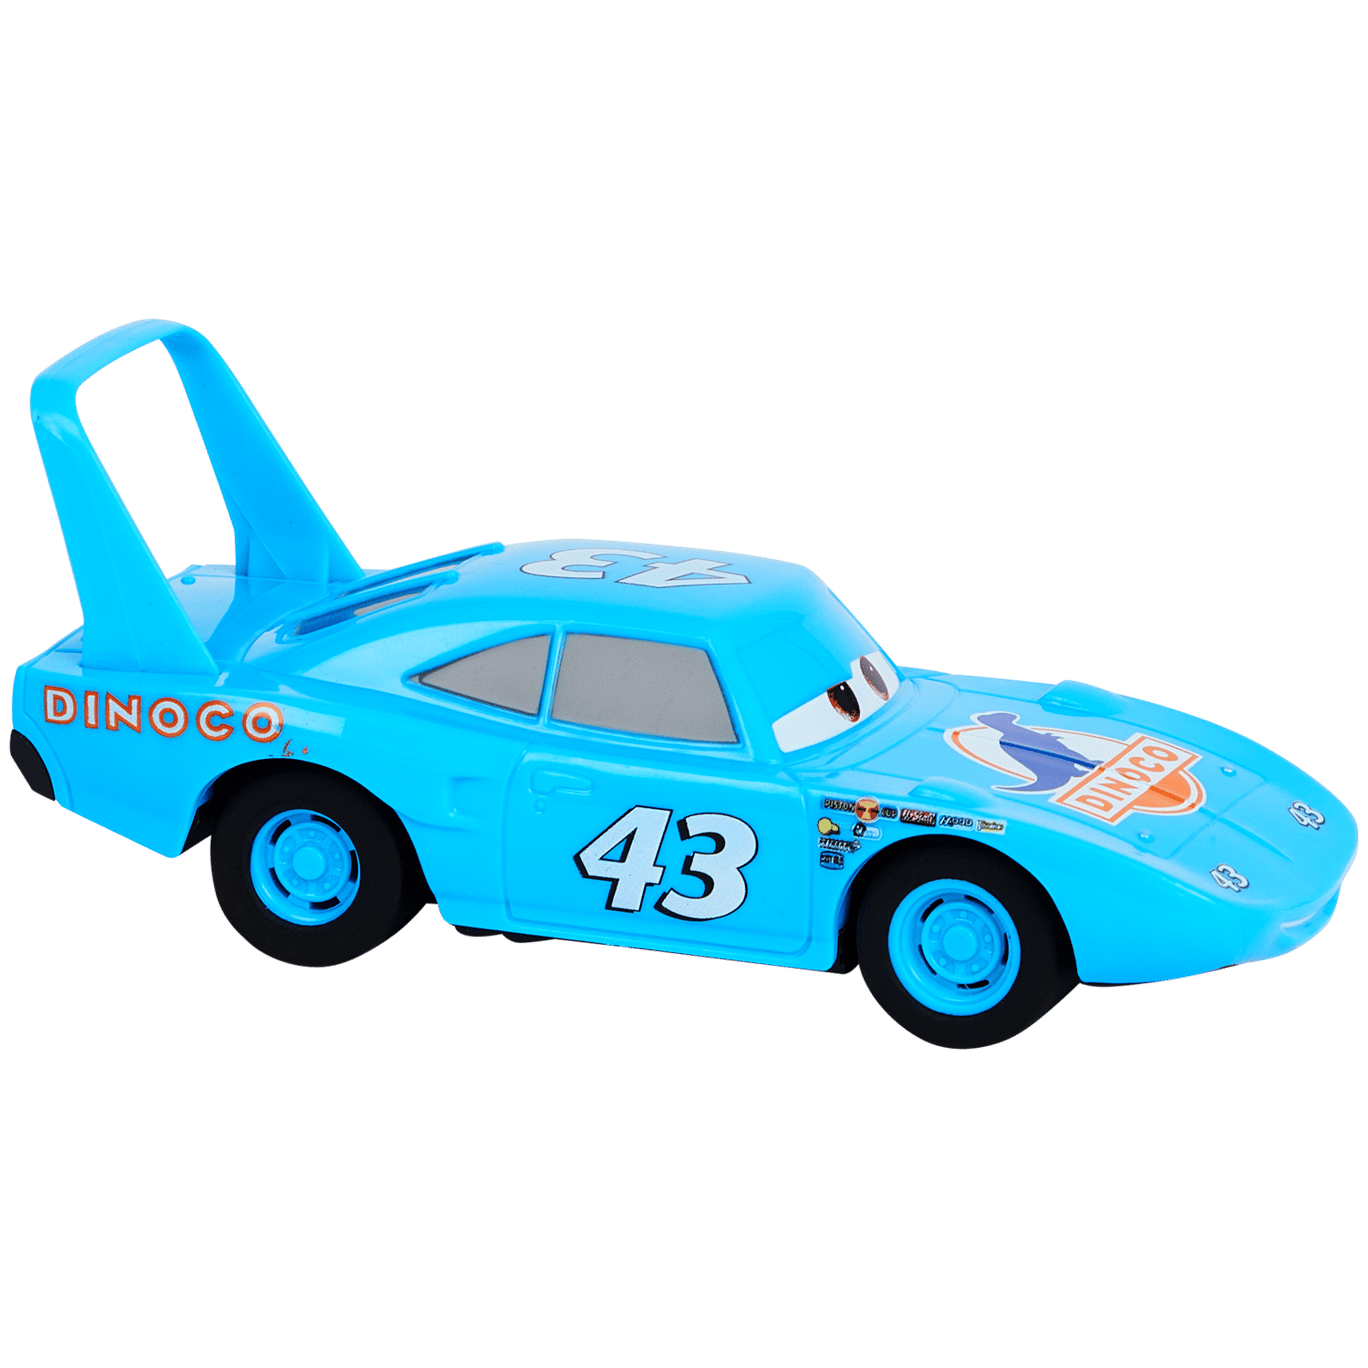 Samochód zabawkowy Cars